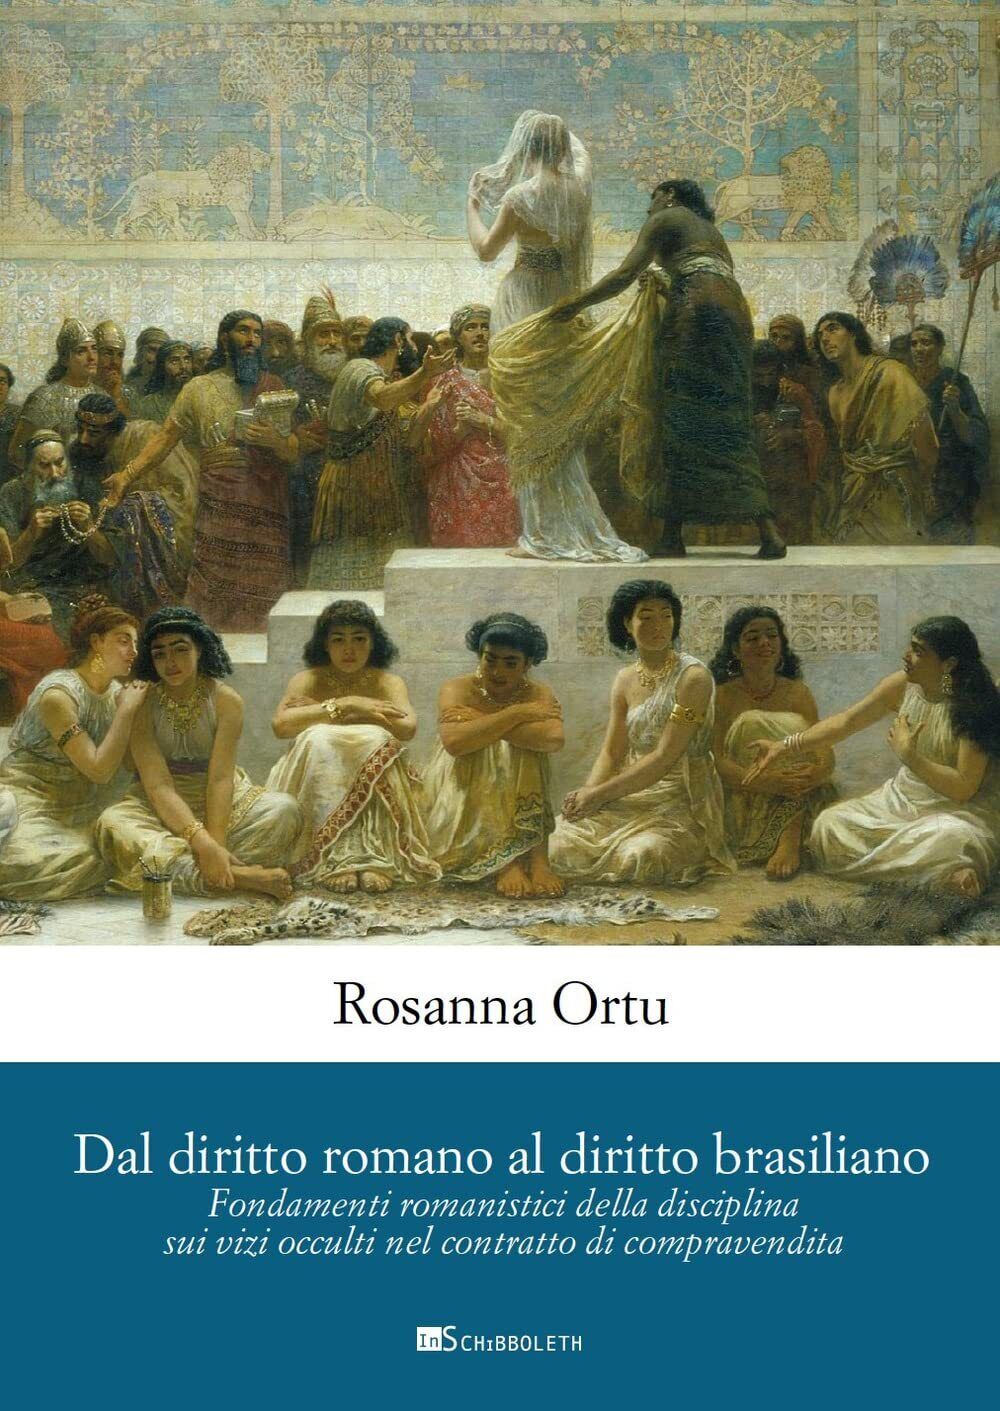 Dal diritto romano al diritto brasiliano - Rosanna Ortu - Inschibboleth, 2022